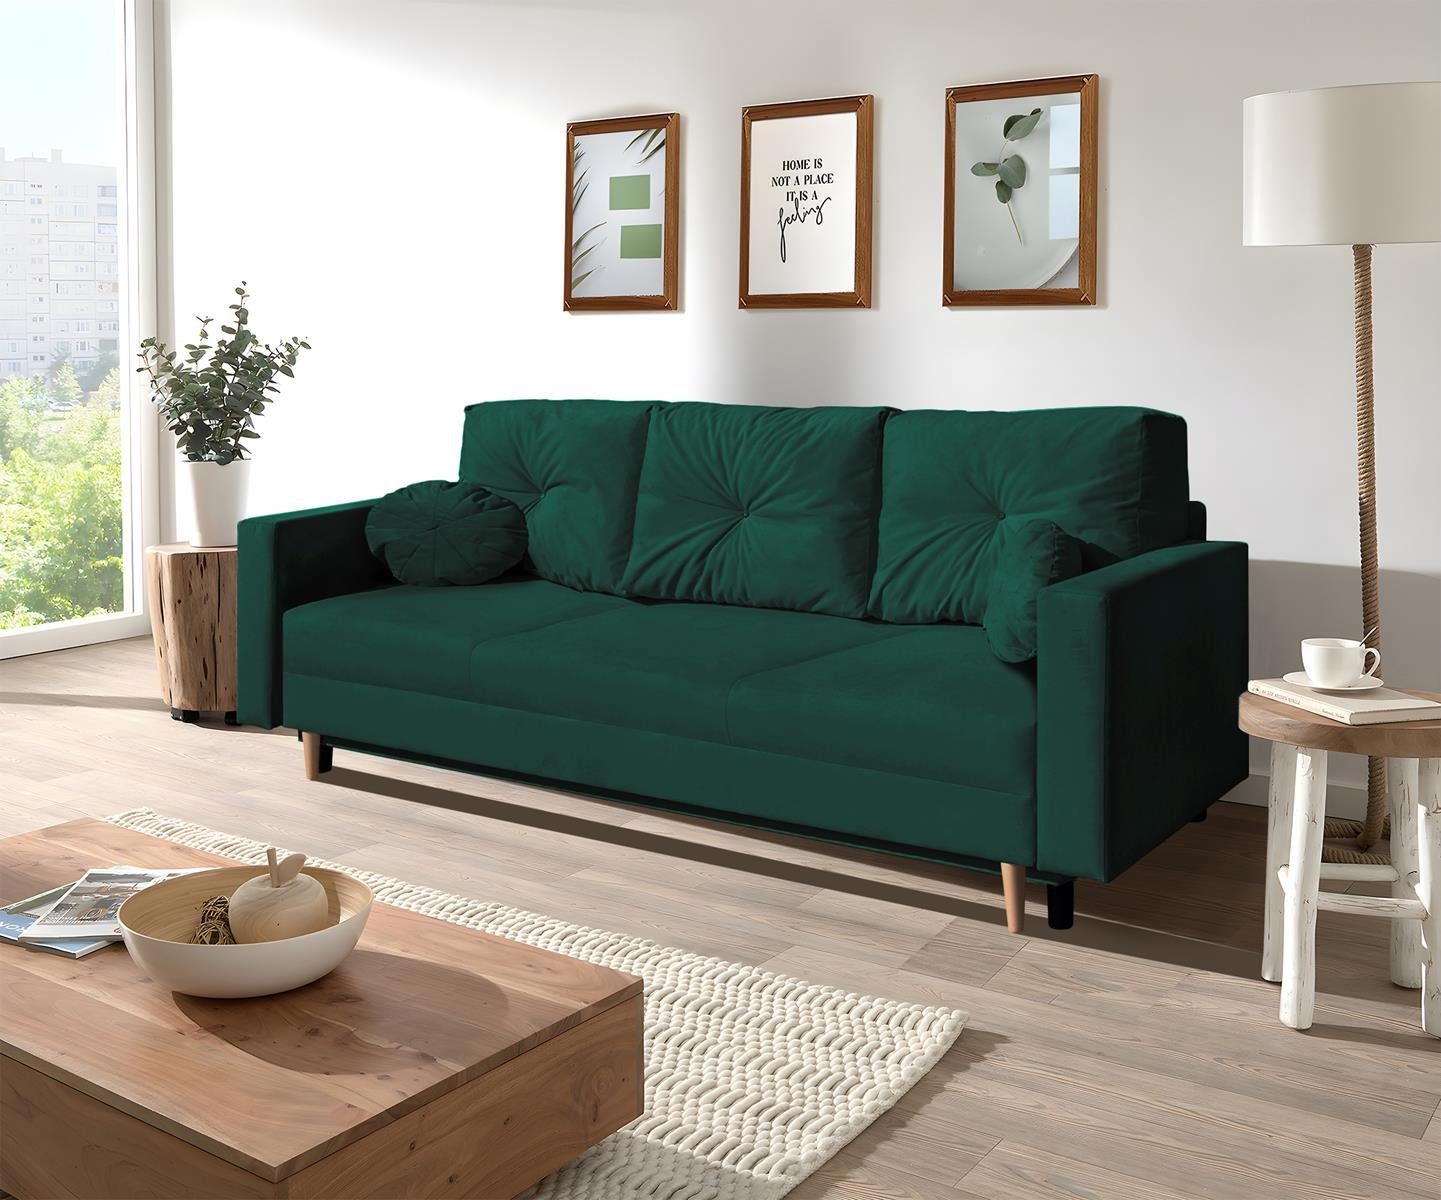 Beautysofa 3-Sitzer MILAN, Relaxfunktion (trinity 28) Holzbeine, skandinavisches 3-Sitzer mit Design, grün Sofa Flasches Wellenunterfederung, Bettkasten